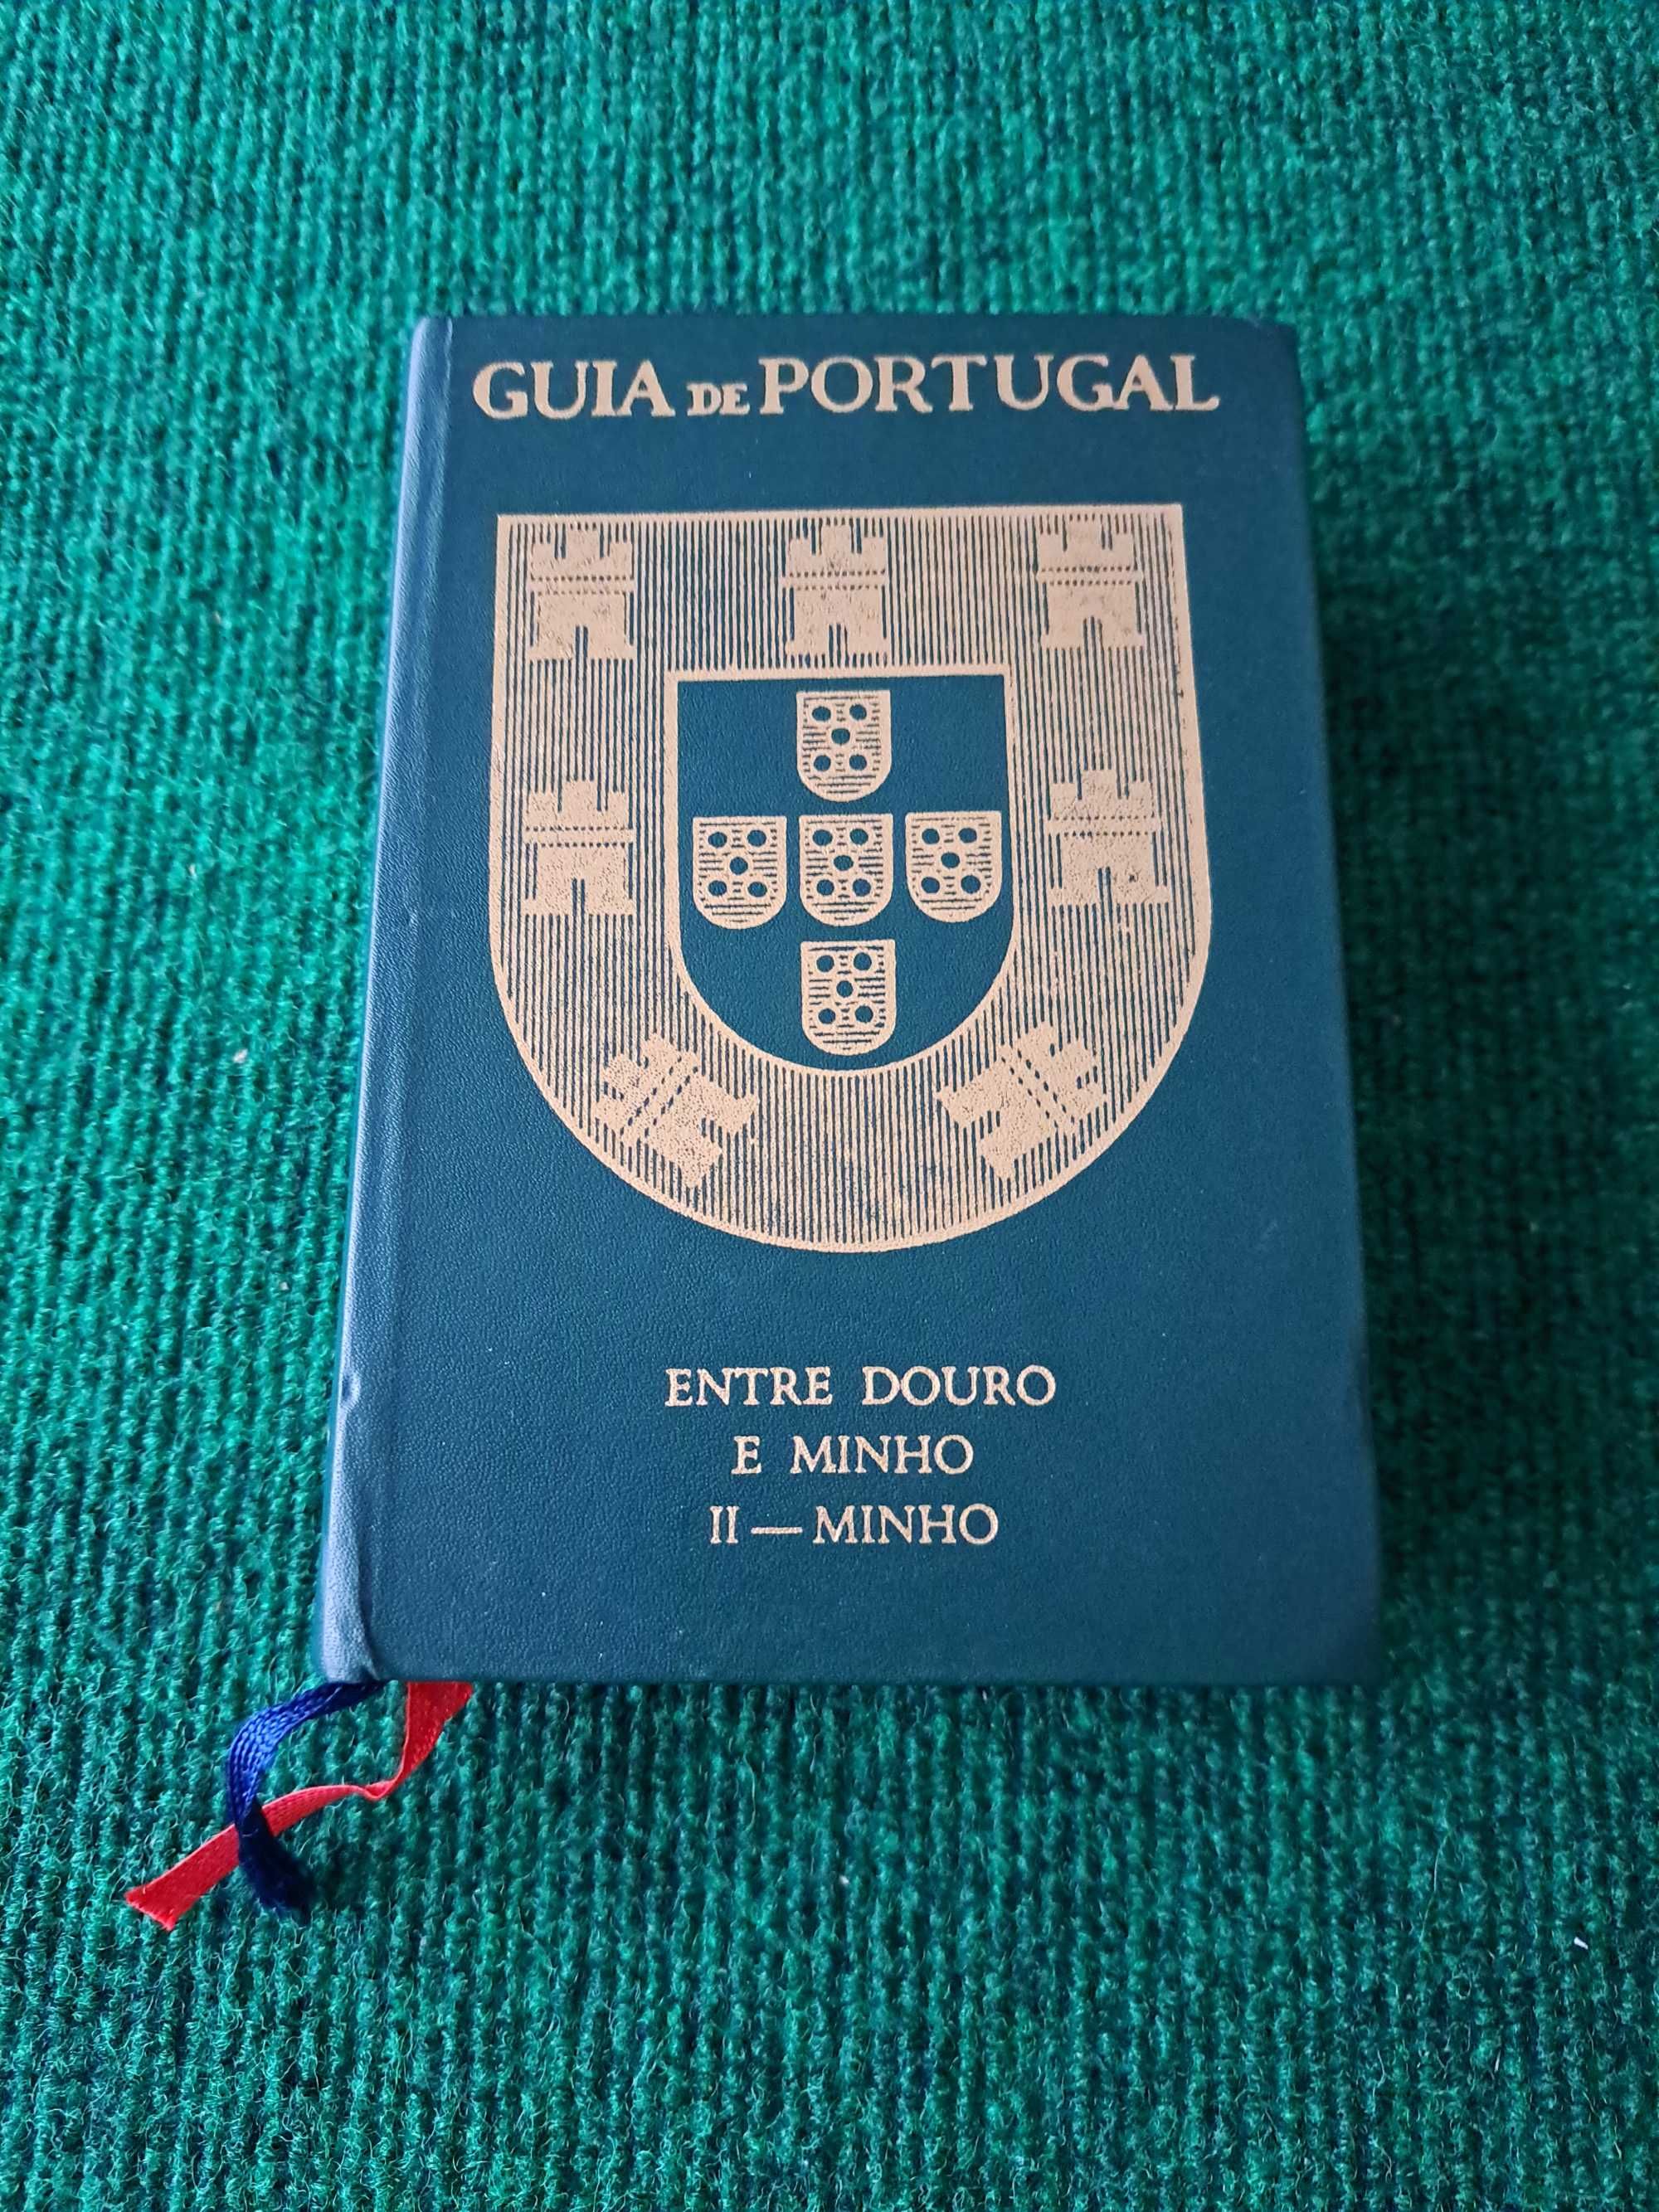 Guia de Portugal - Entre Douro e Minho - II - Minho